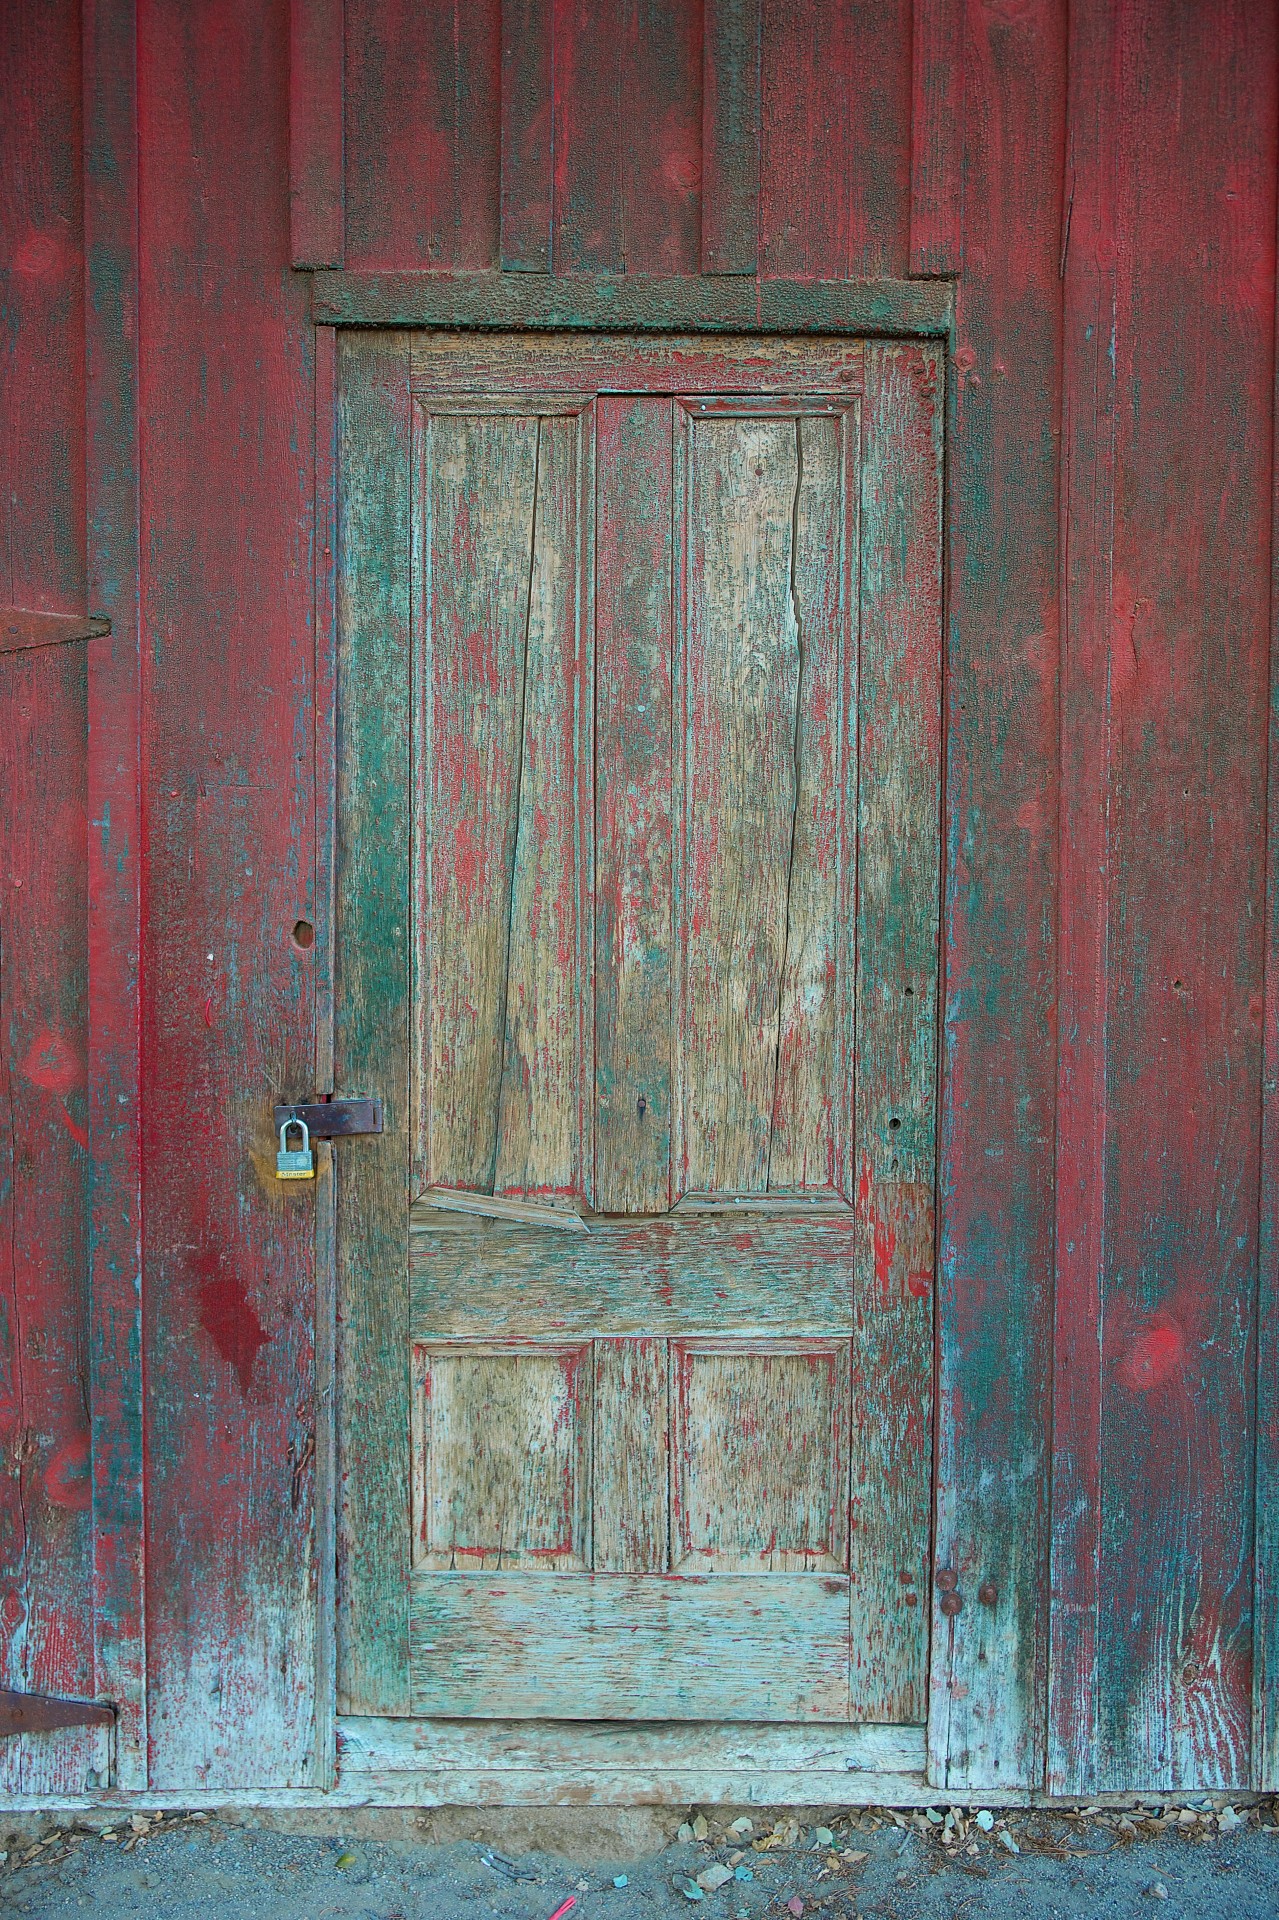 Rustikální Red Dřevěné dveře